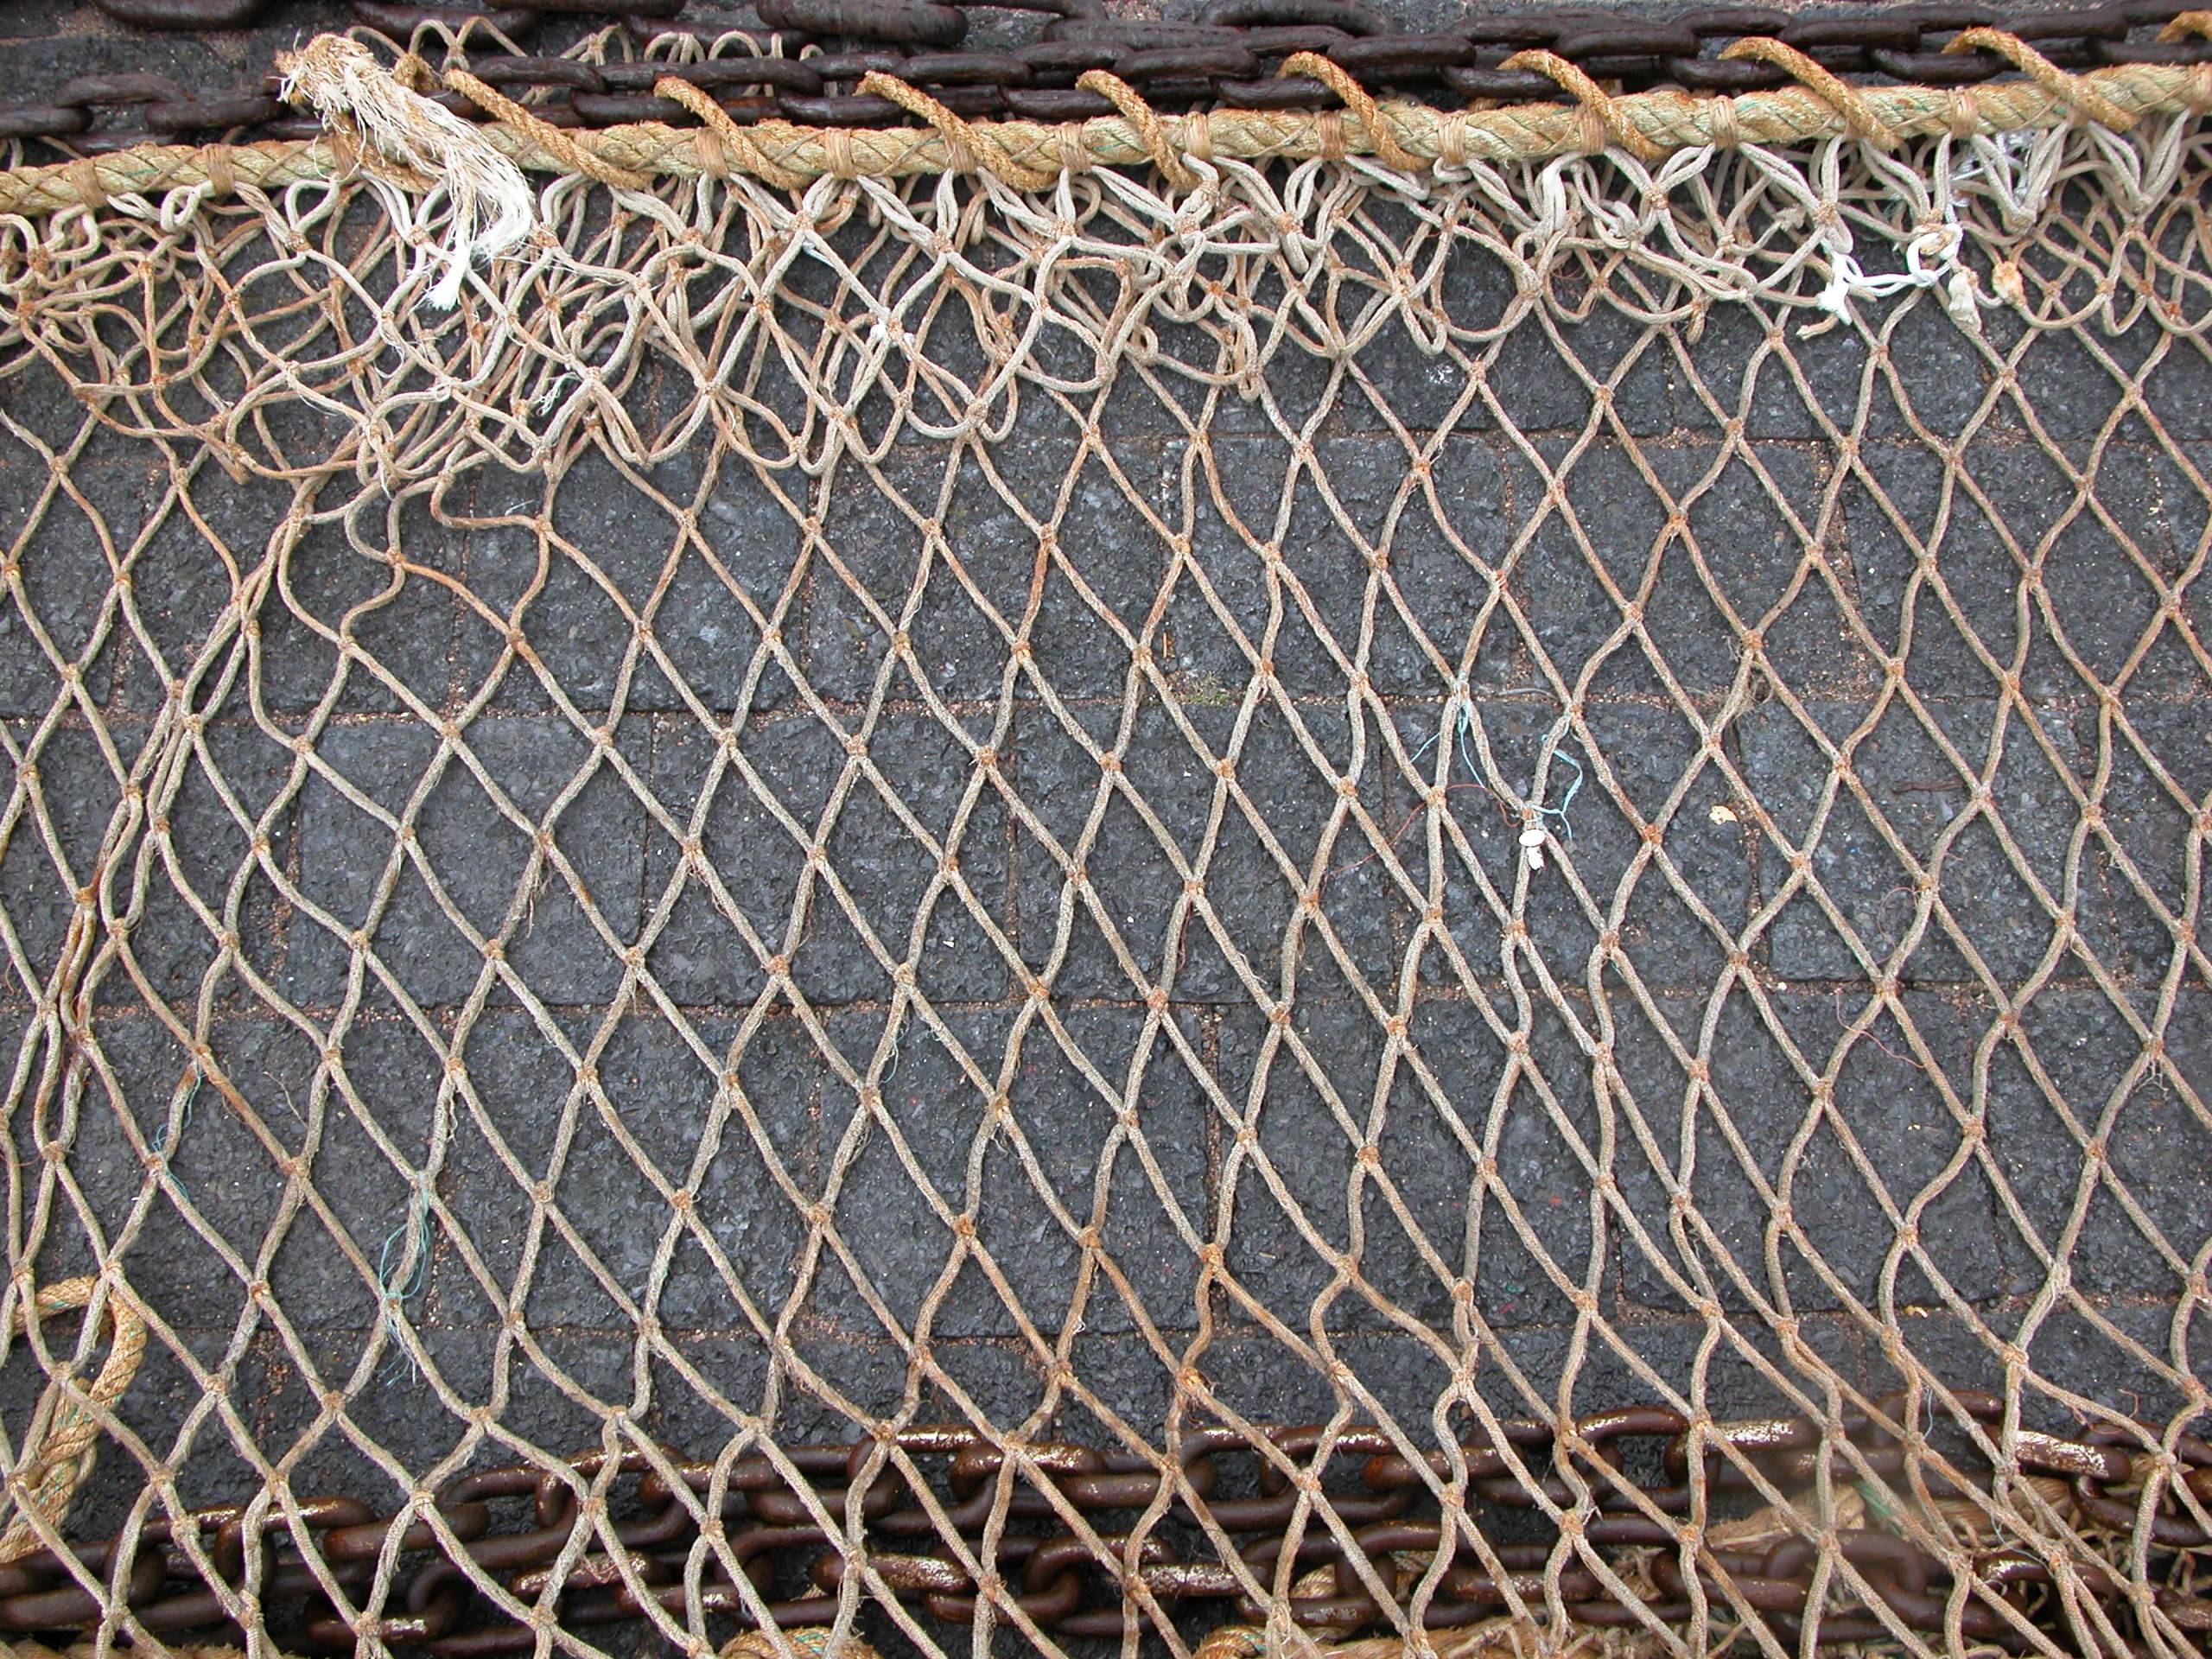 Узлы плетения сети которые не ползут. как вязать узлы для рыболовных сетей .пособие для начинающего браконьера.